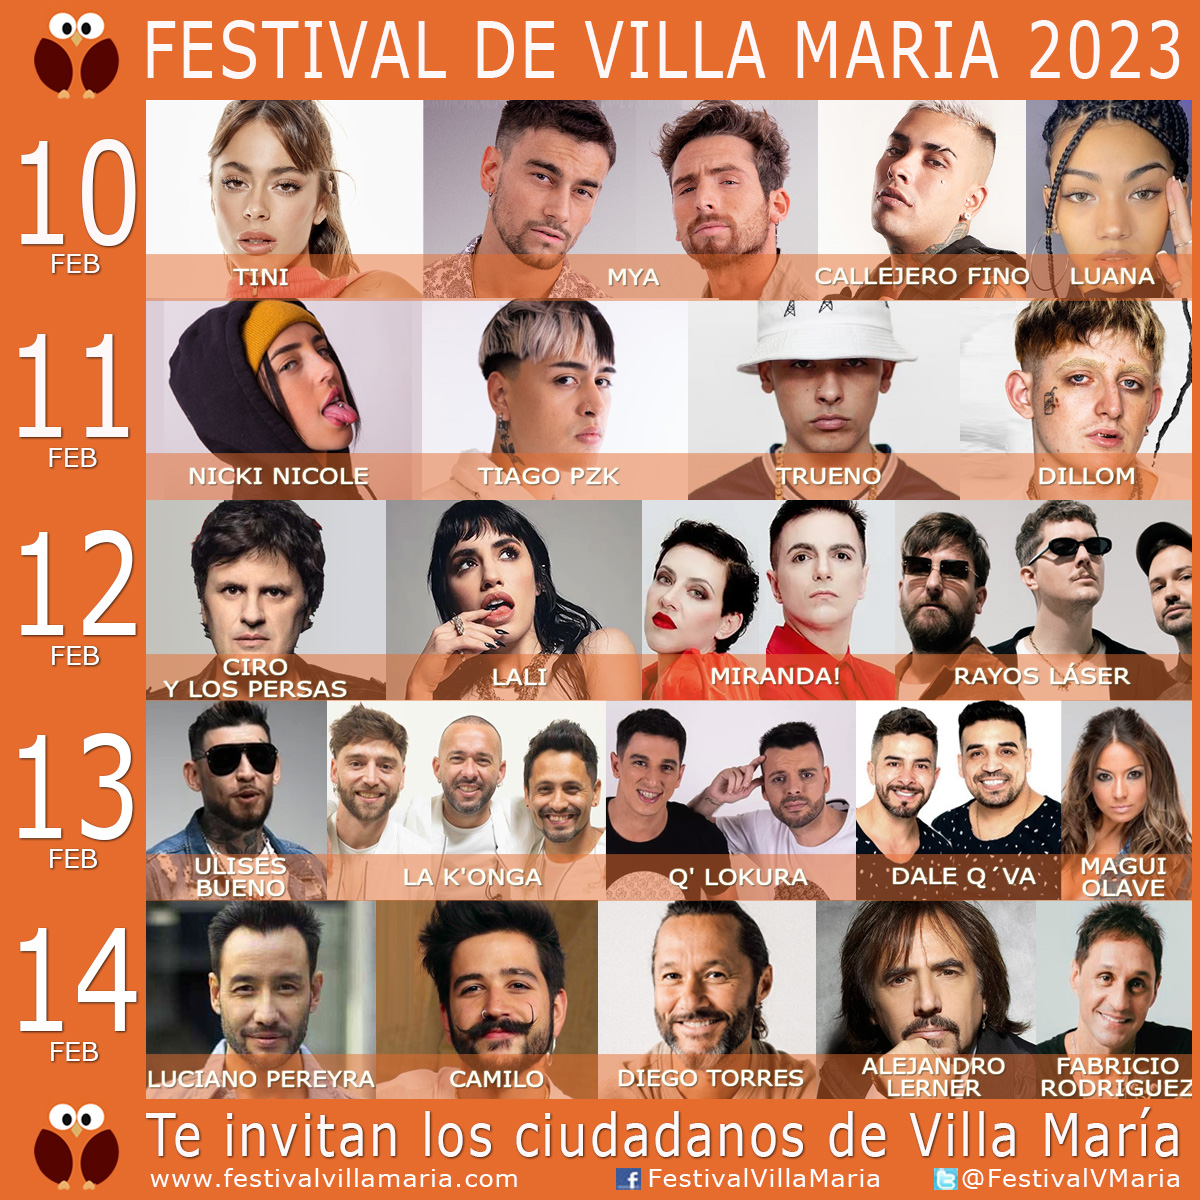 Cartelera Artistas Festival Villa Maria 2023